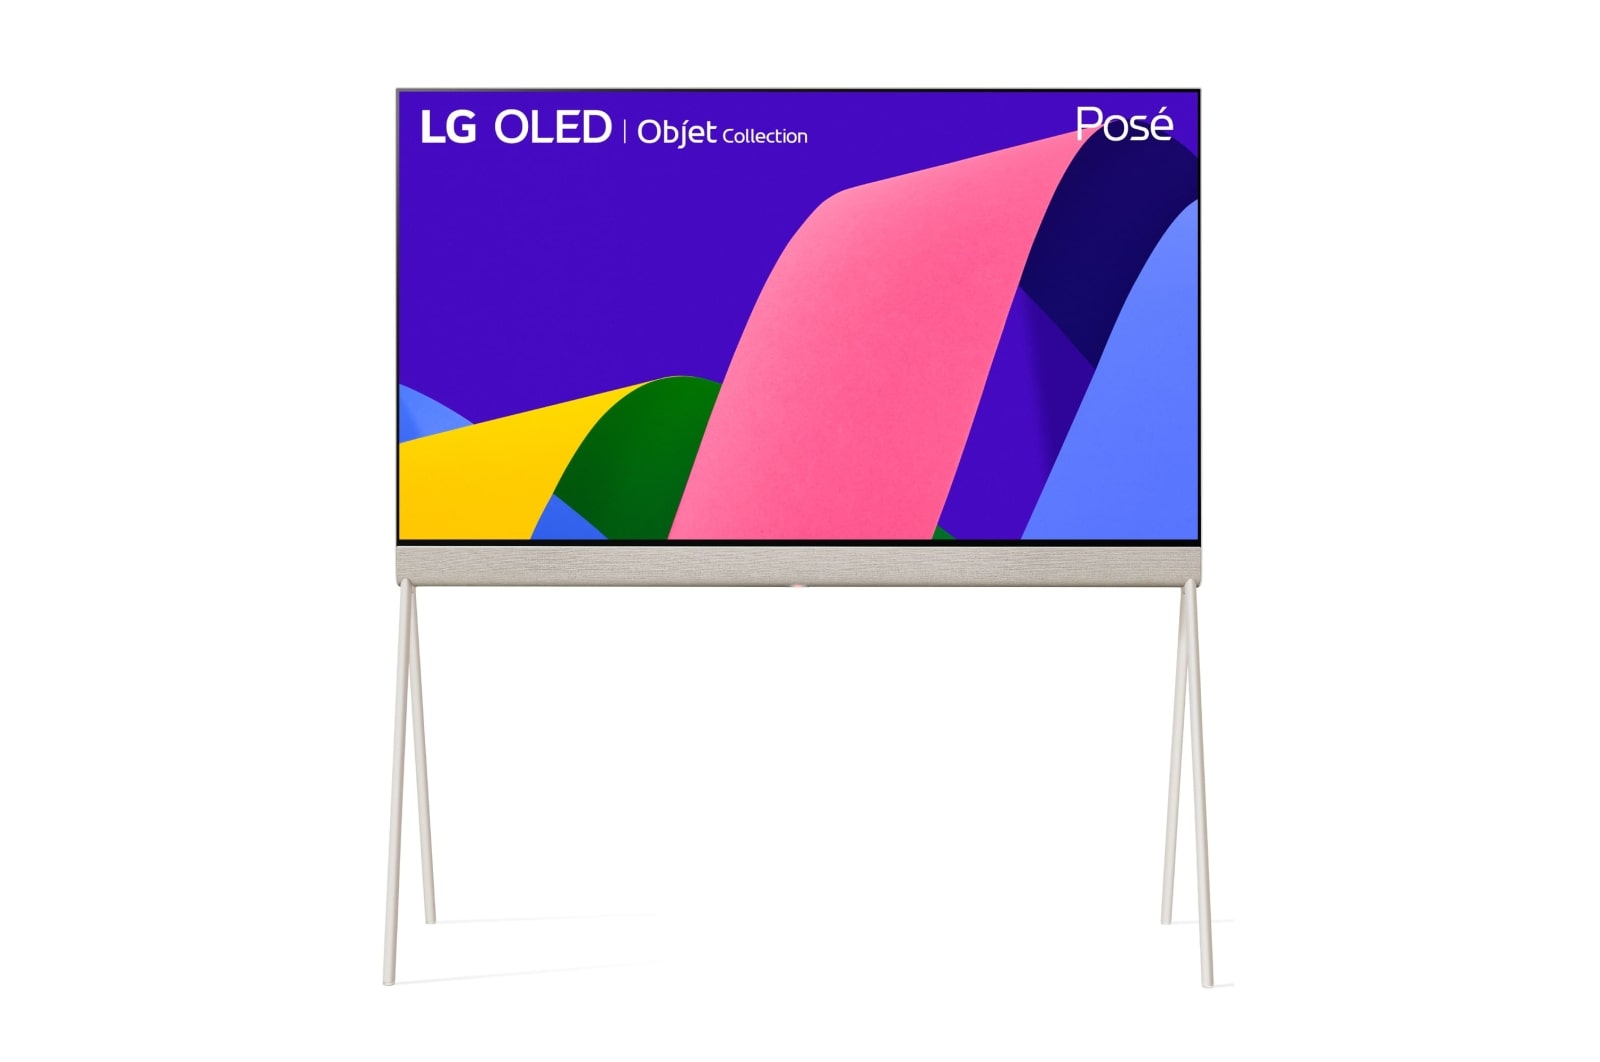 LG TV LG  4K OLED evo POSE, Procesador Inteligente de Máxima Potencia 4K a9 Gen 5 con IA, compatible con el 100% de formatos HDR, HDR Dolby Vision y Dolby Atmos.  Smart TV webOS22, el mejor TV para Gaming. , 48LX1Q6LA